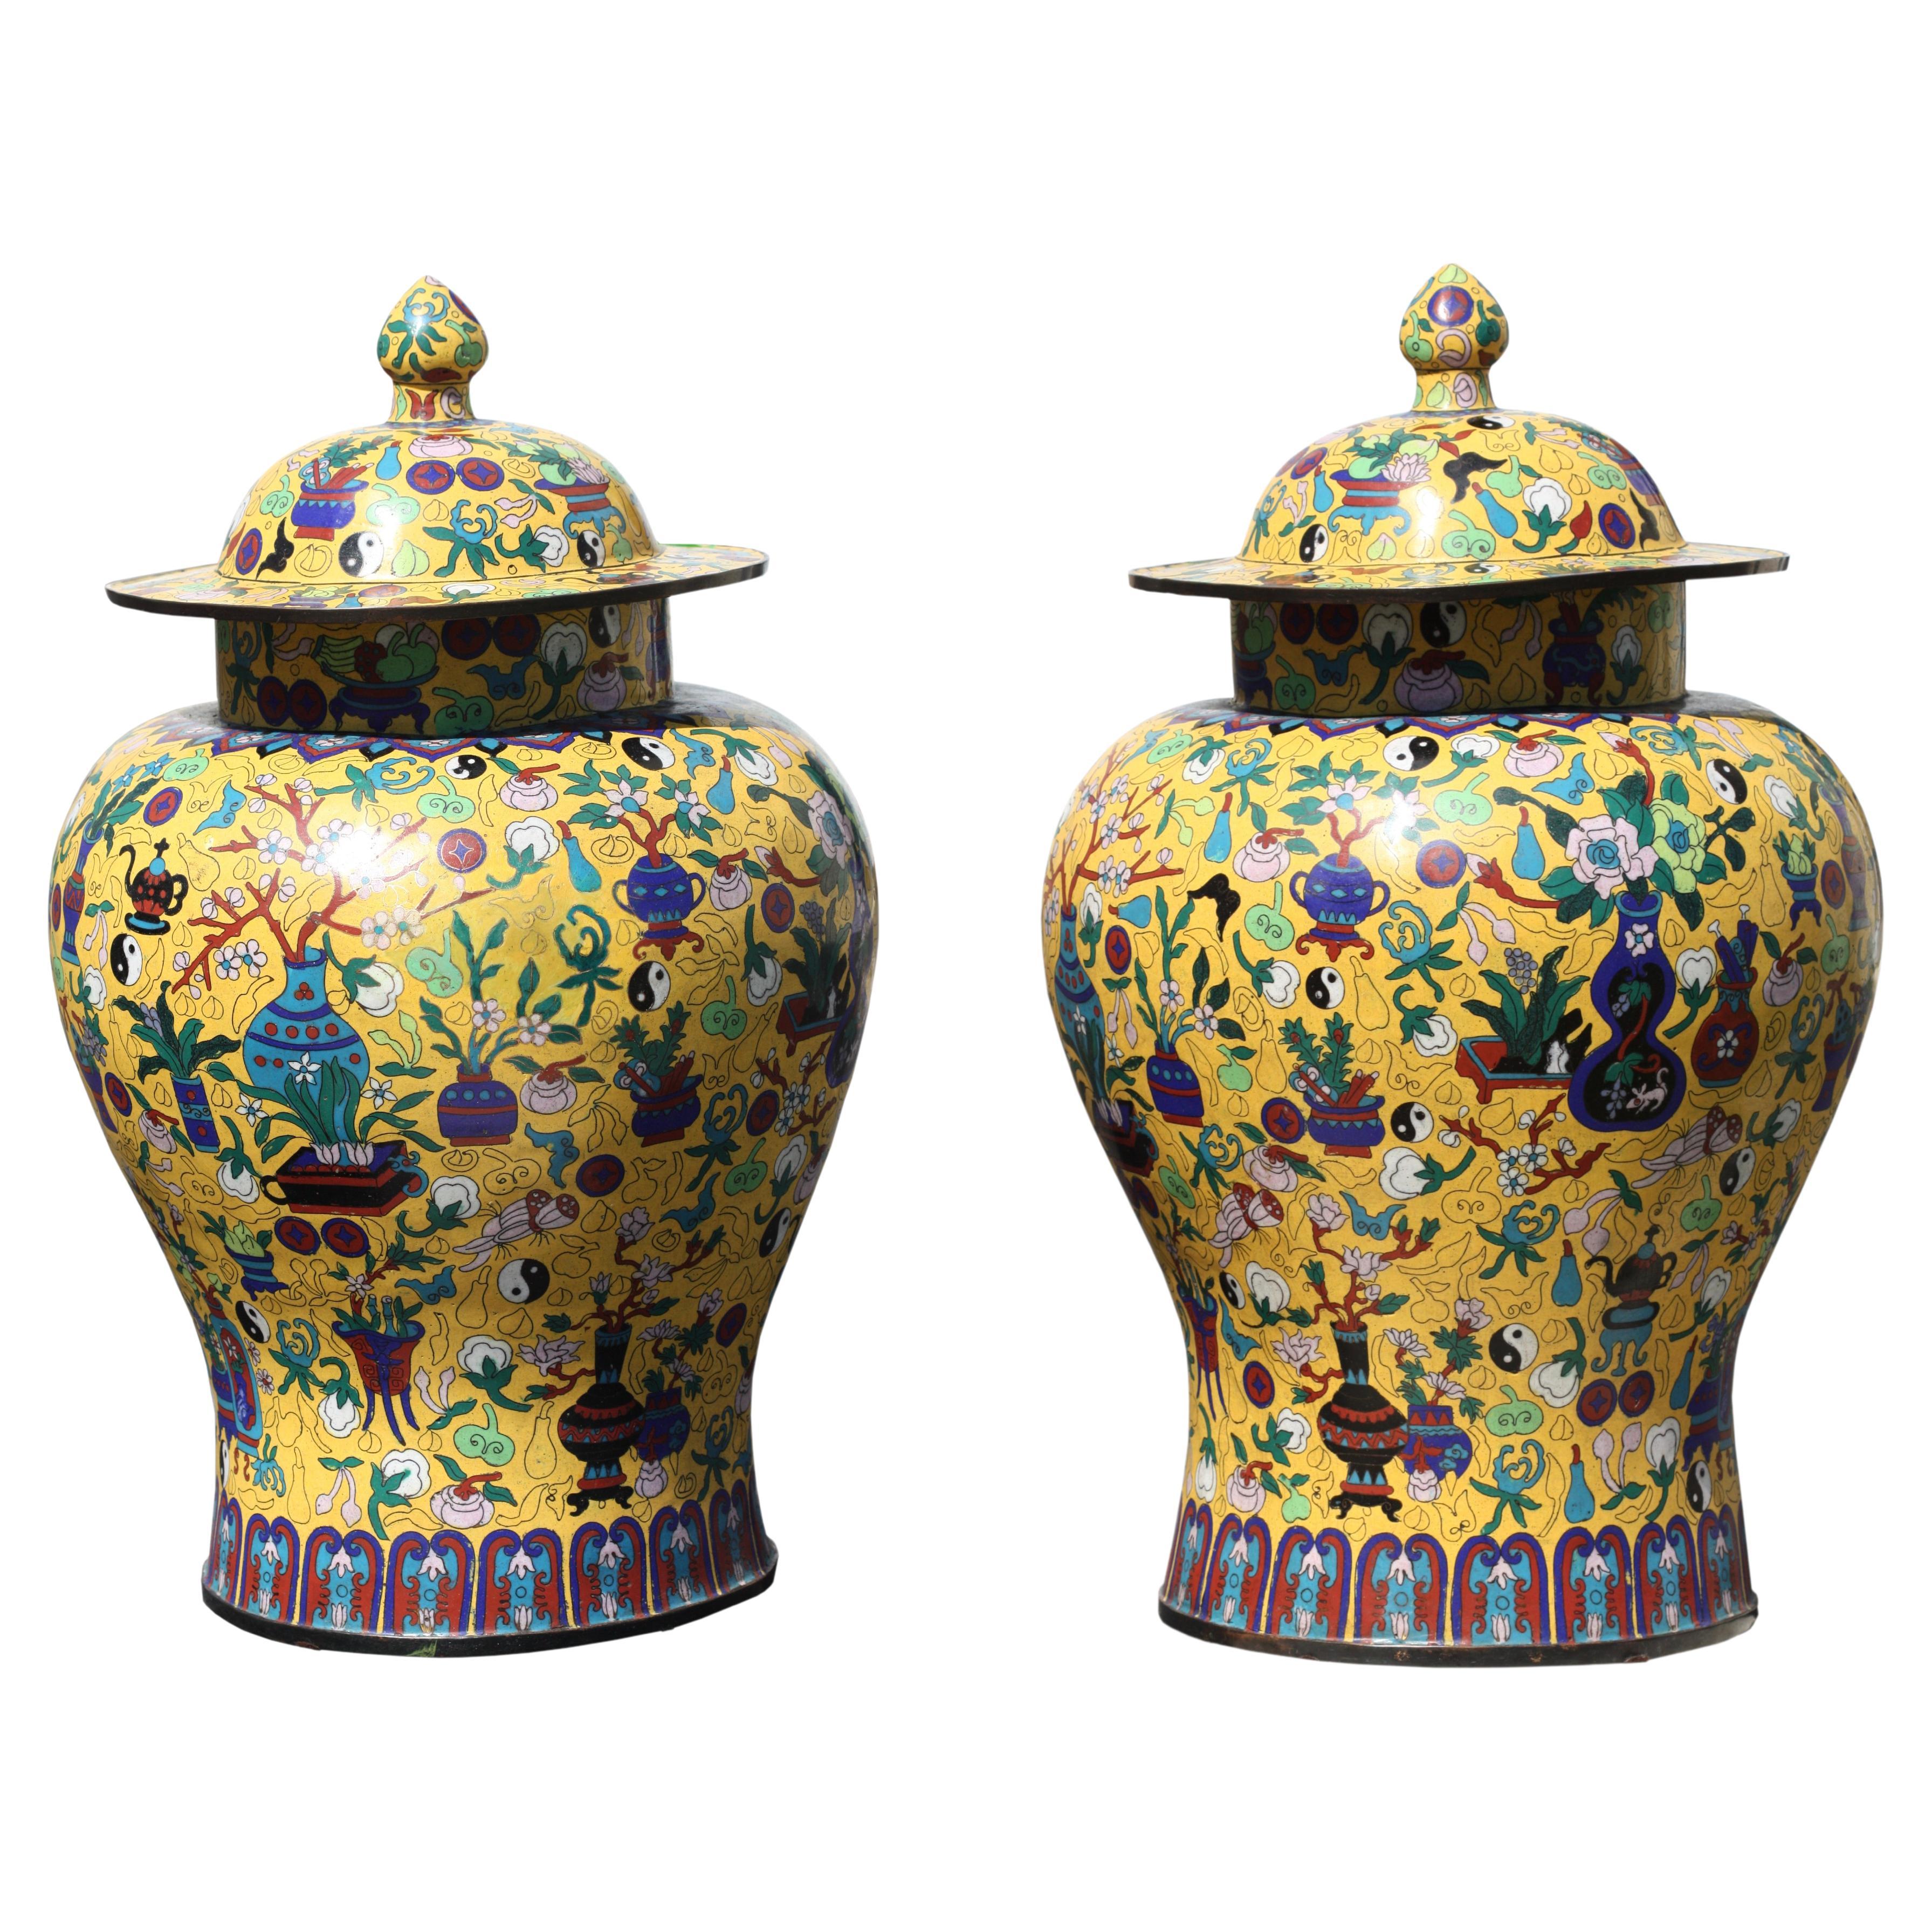 Paire de vases en porcelaine Famille Jaune de style chinois Qing